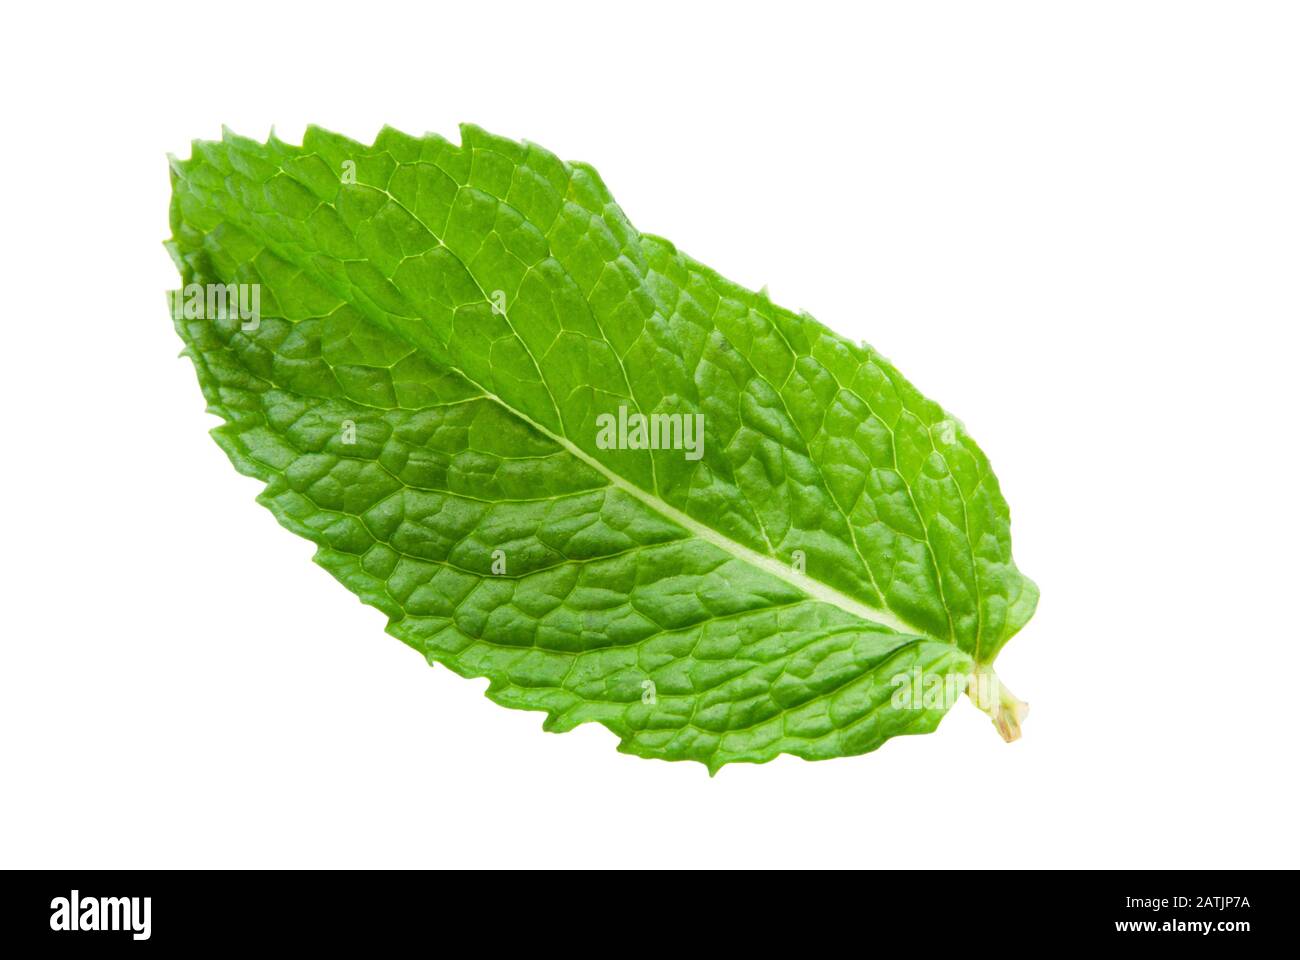 Ein grünes, frisches Minzenblatt mit einem Stamm auf isoliertem weißem Grund. Stockfoto